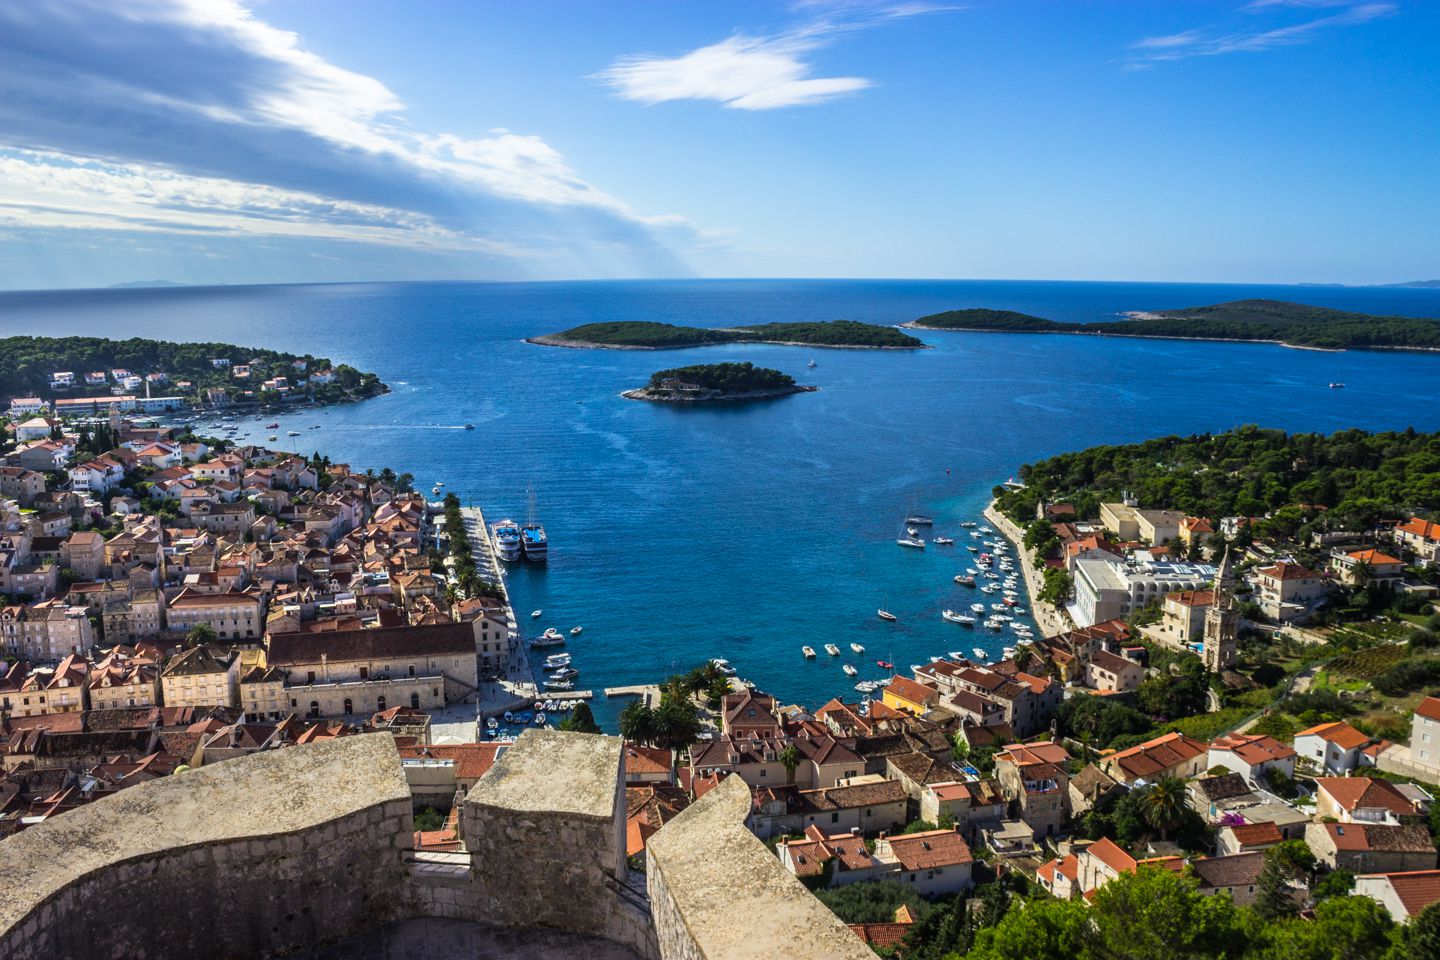 تور کرواسی با پرواز مستقیم و اقامت 7 روزه در بهترین هتل های کشور کرواسی